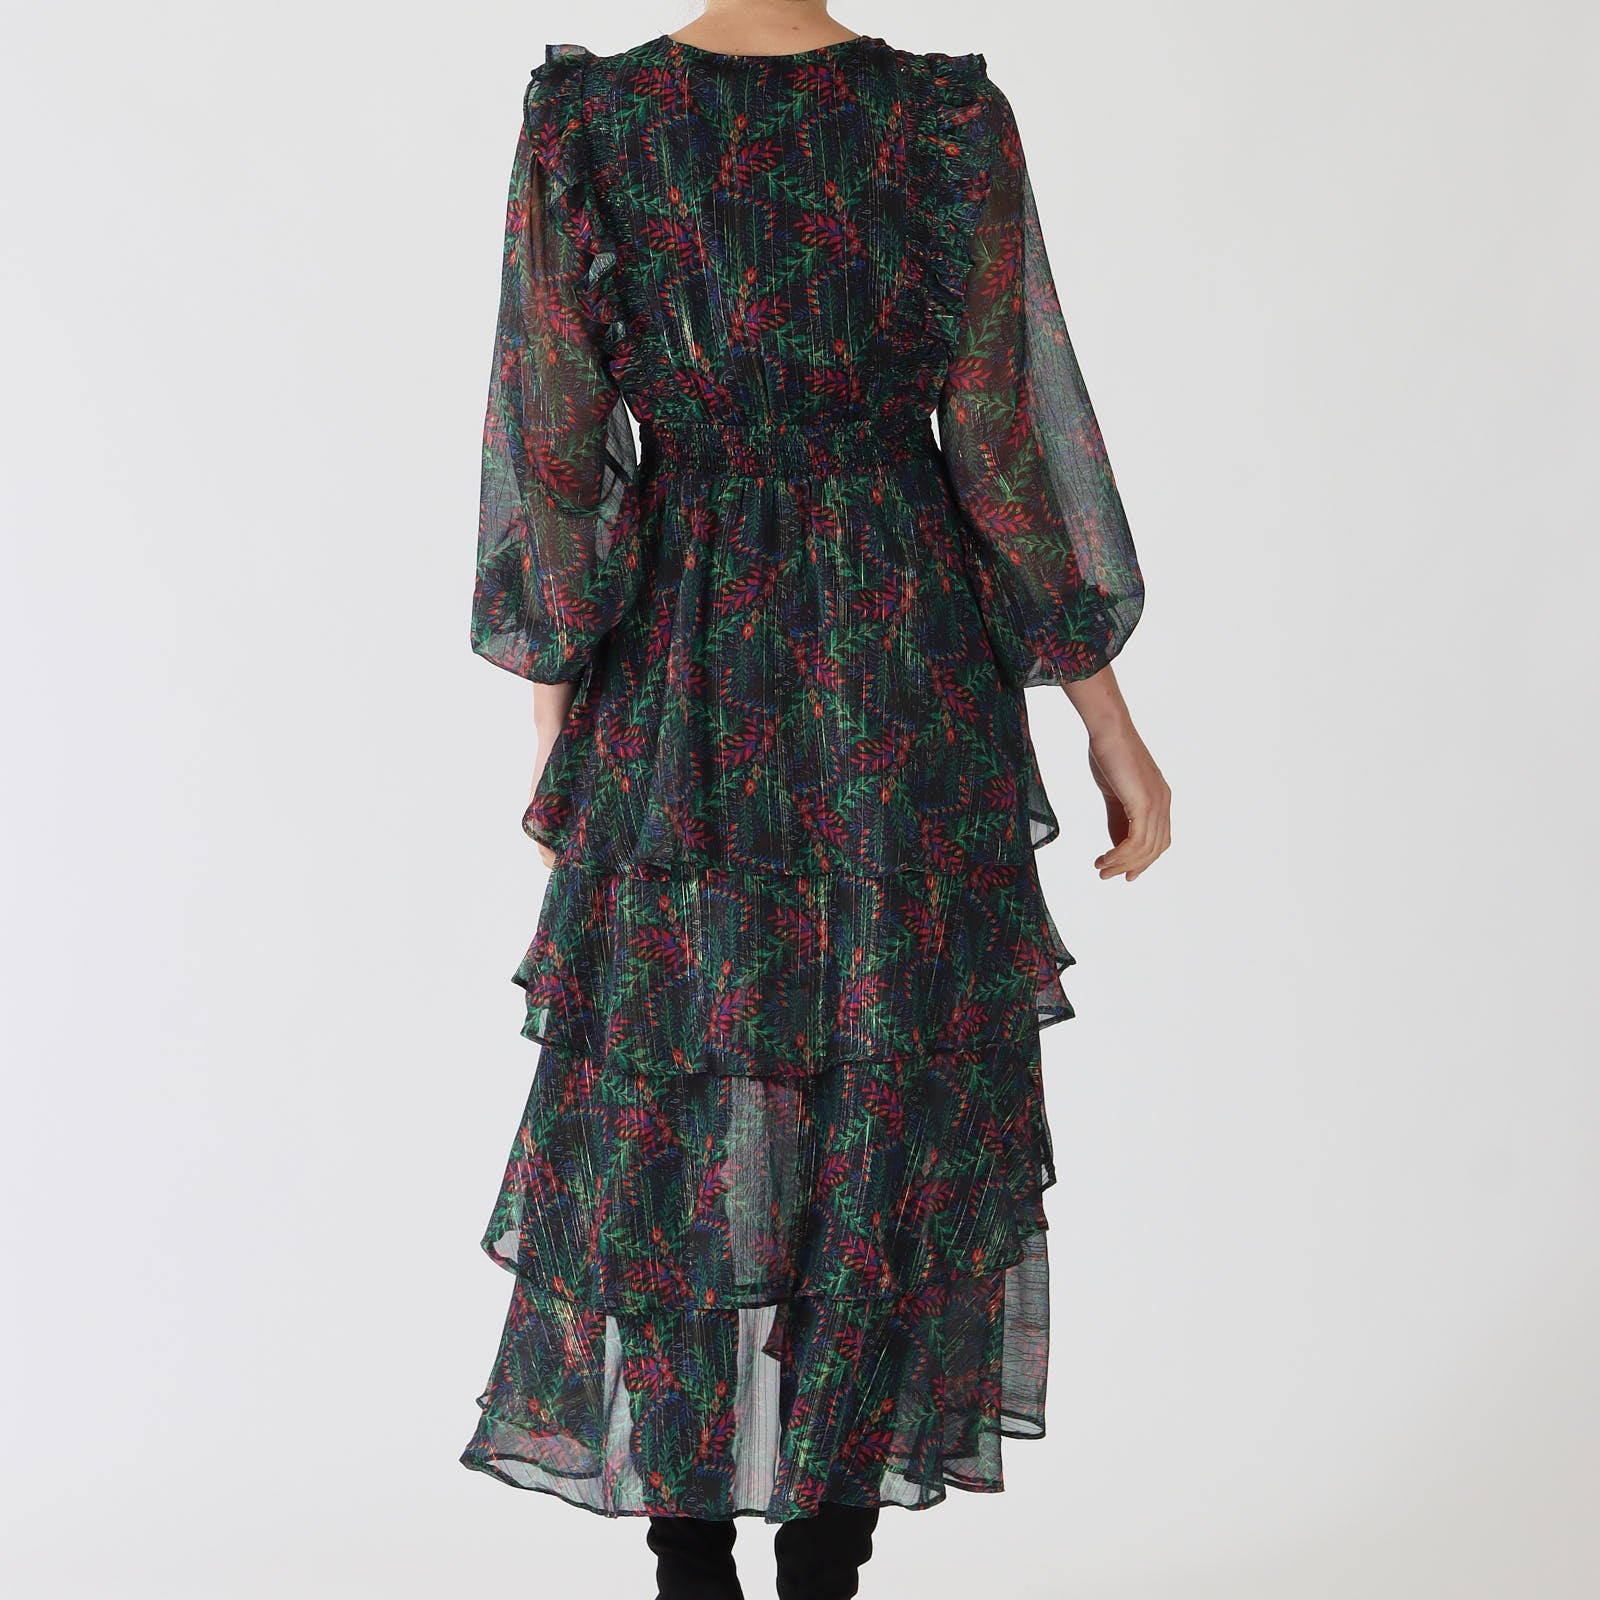 Jeanne Black Floral Print Lurex Tiered Midi Dress